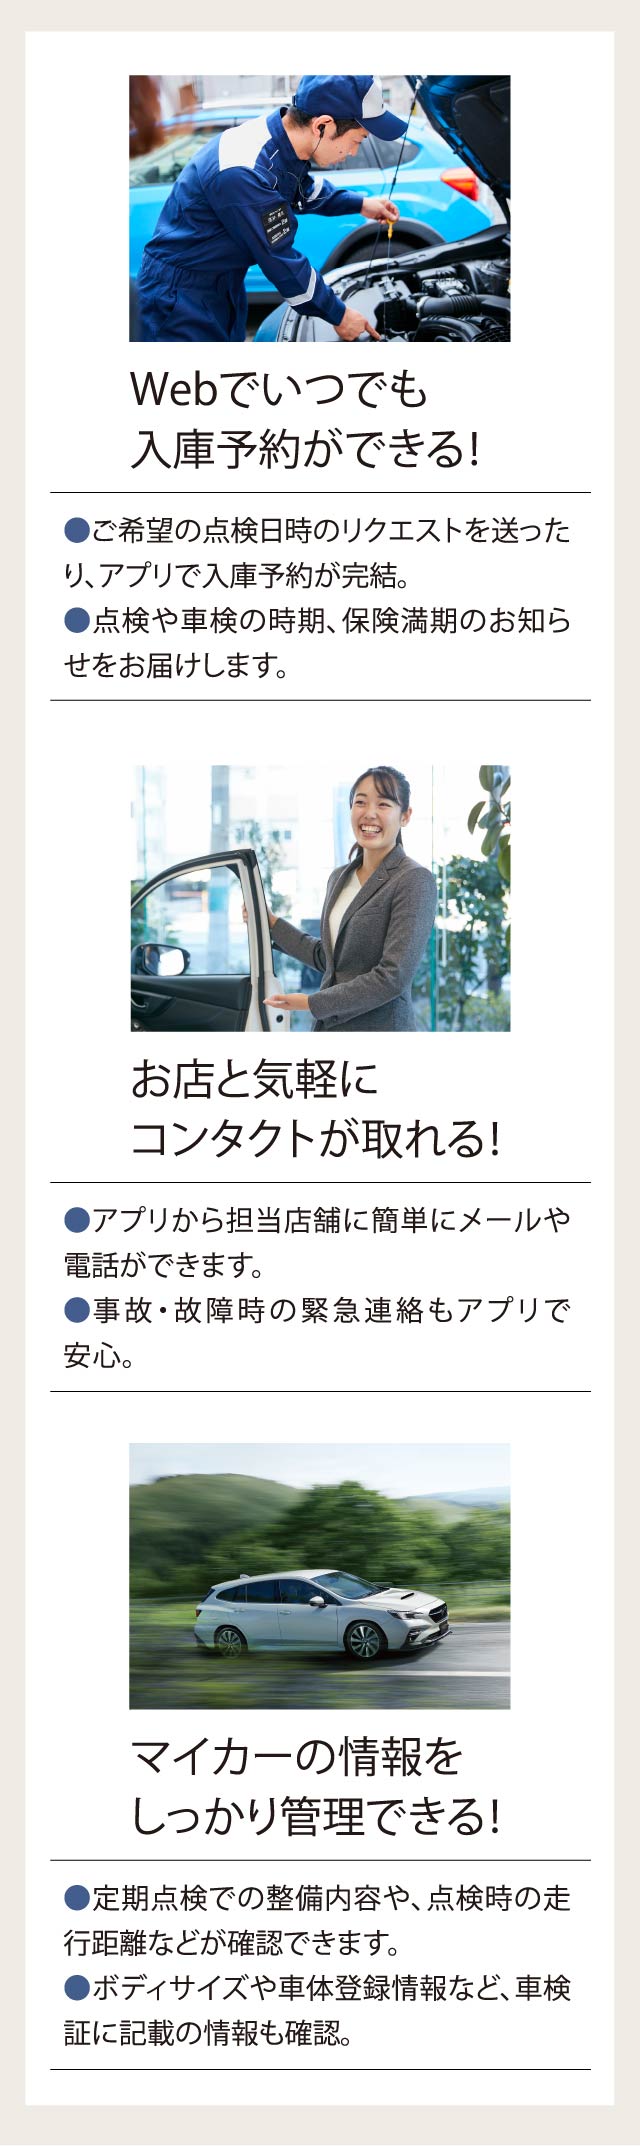 オーナー様専用アプリ「マイスバル」のご紹介 ｜東京スバル株式会社